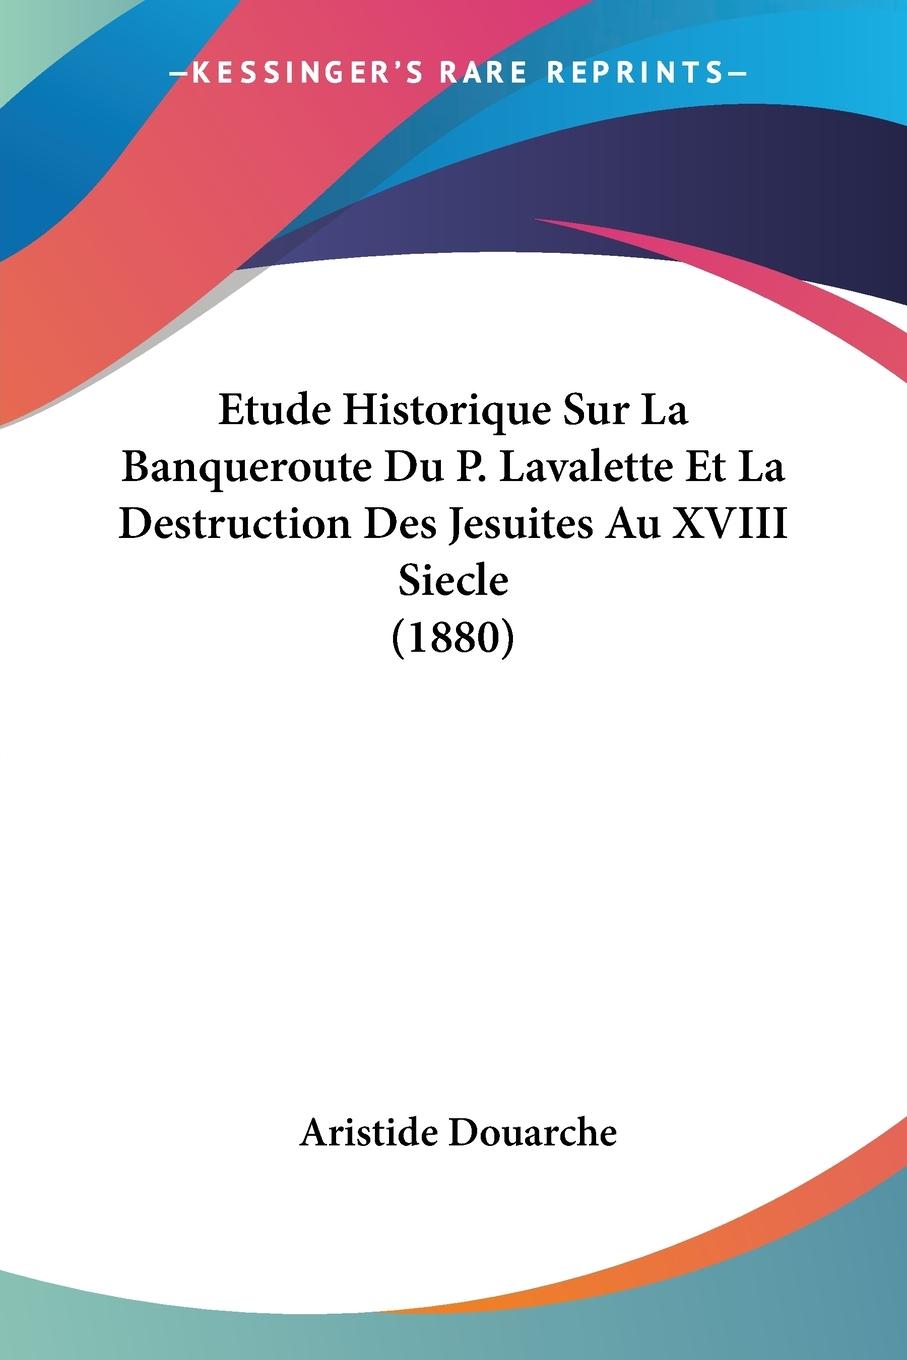 Etude Historique Sur La Banqueroute Du P. Lavalette Et La Destruction Des Jesuites Au XVIII Siecle (1880) - Douarche, Aristide